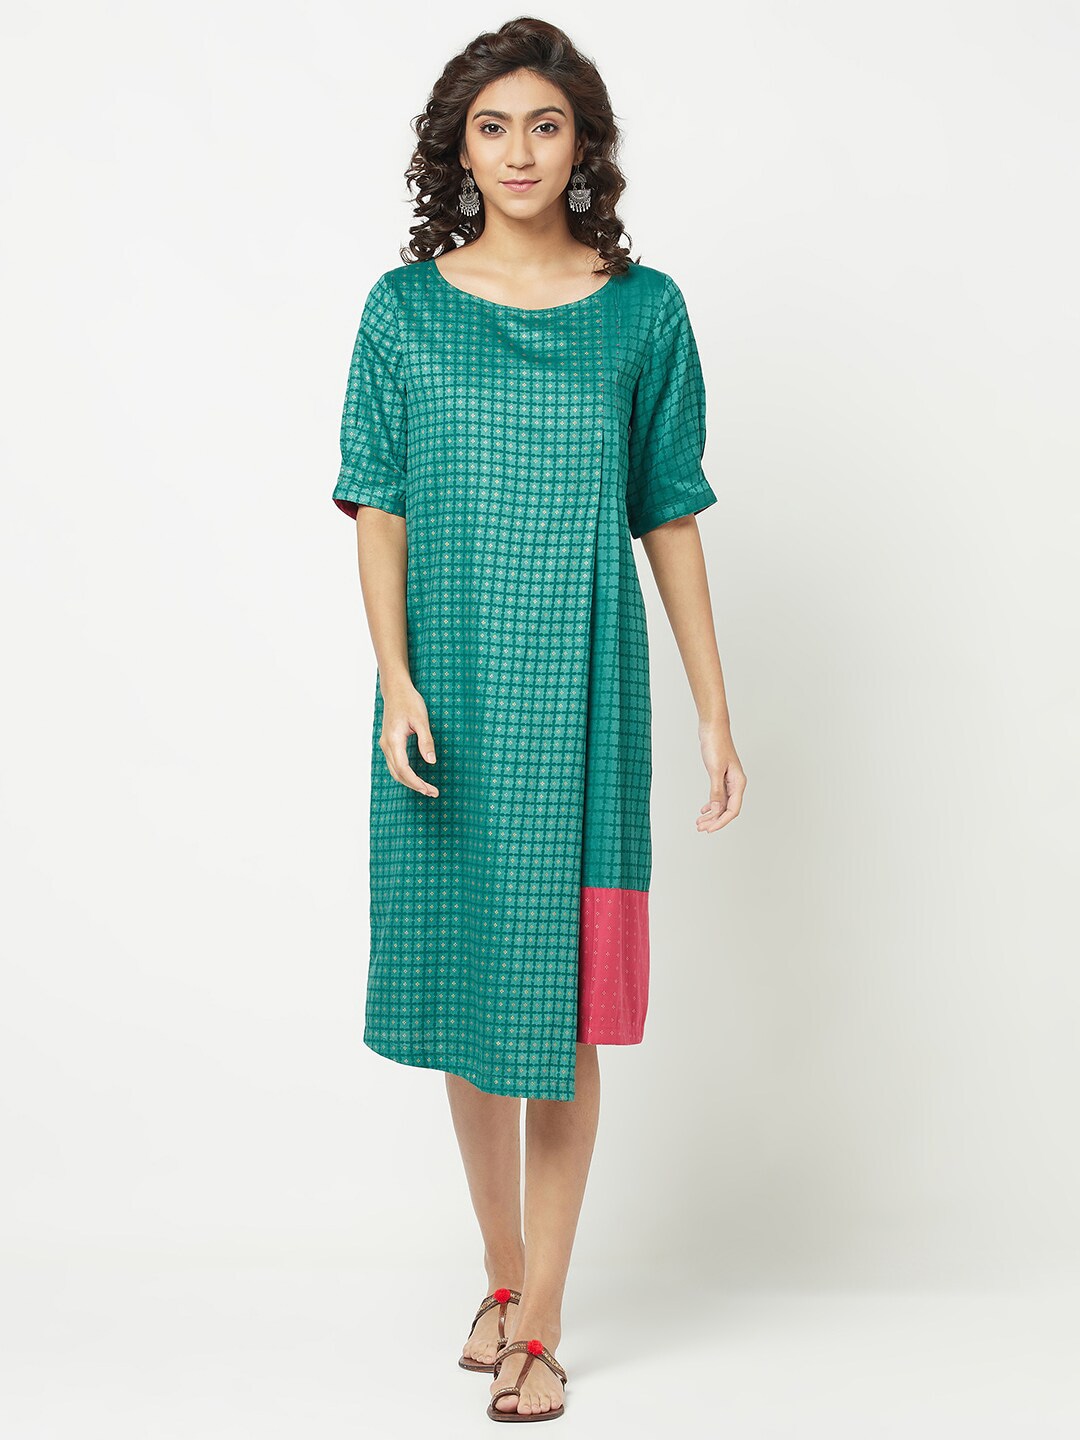 Fabindia Women Green Geometric Printed A-Line Dress Price in India